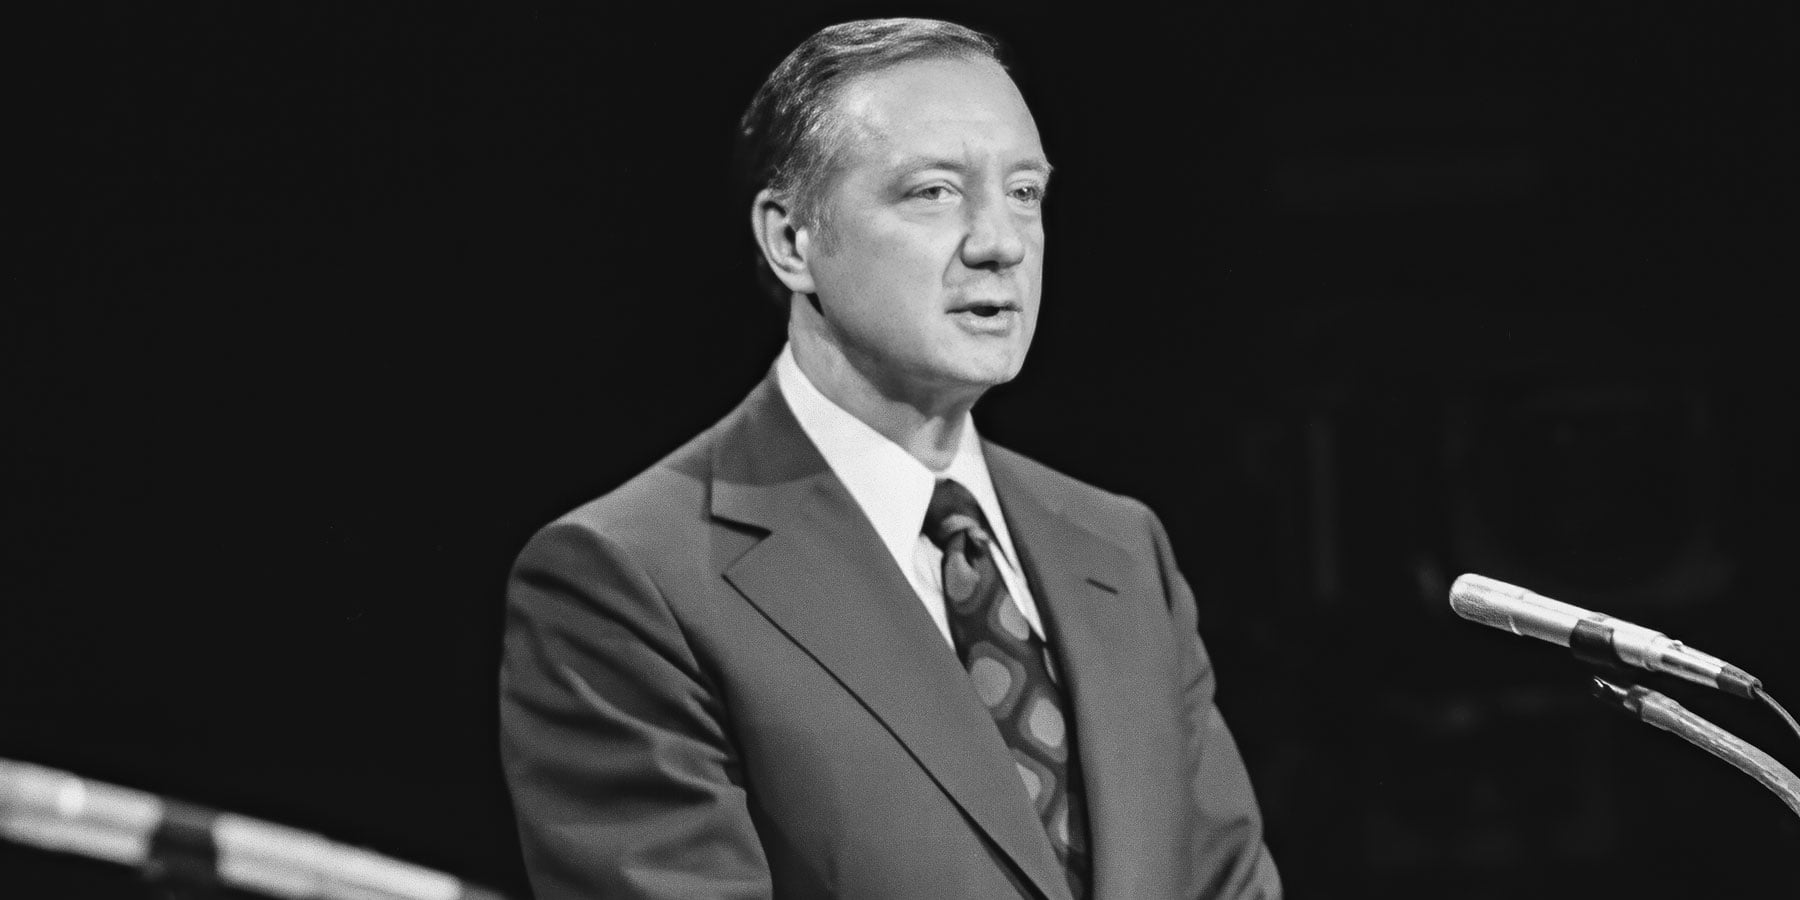 Michael Bilandic appeared at a mayoral debate at WTTW’s studios in 1977.